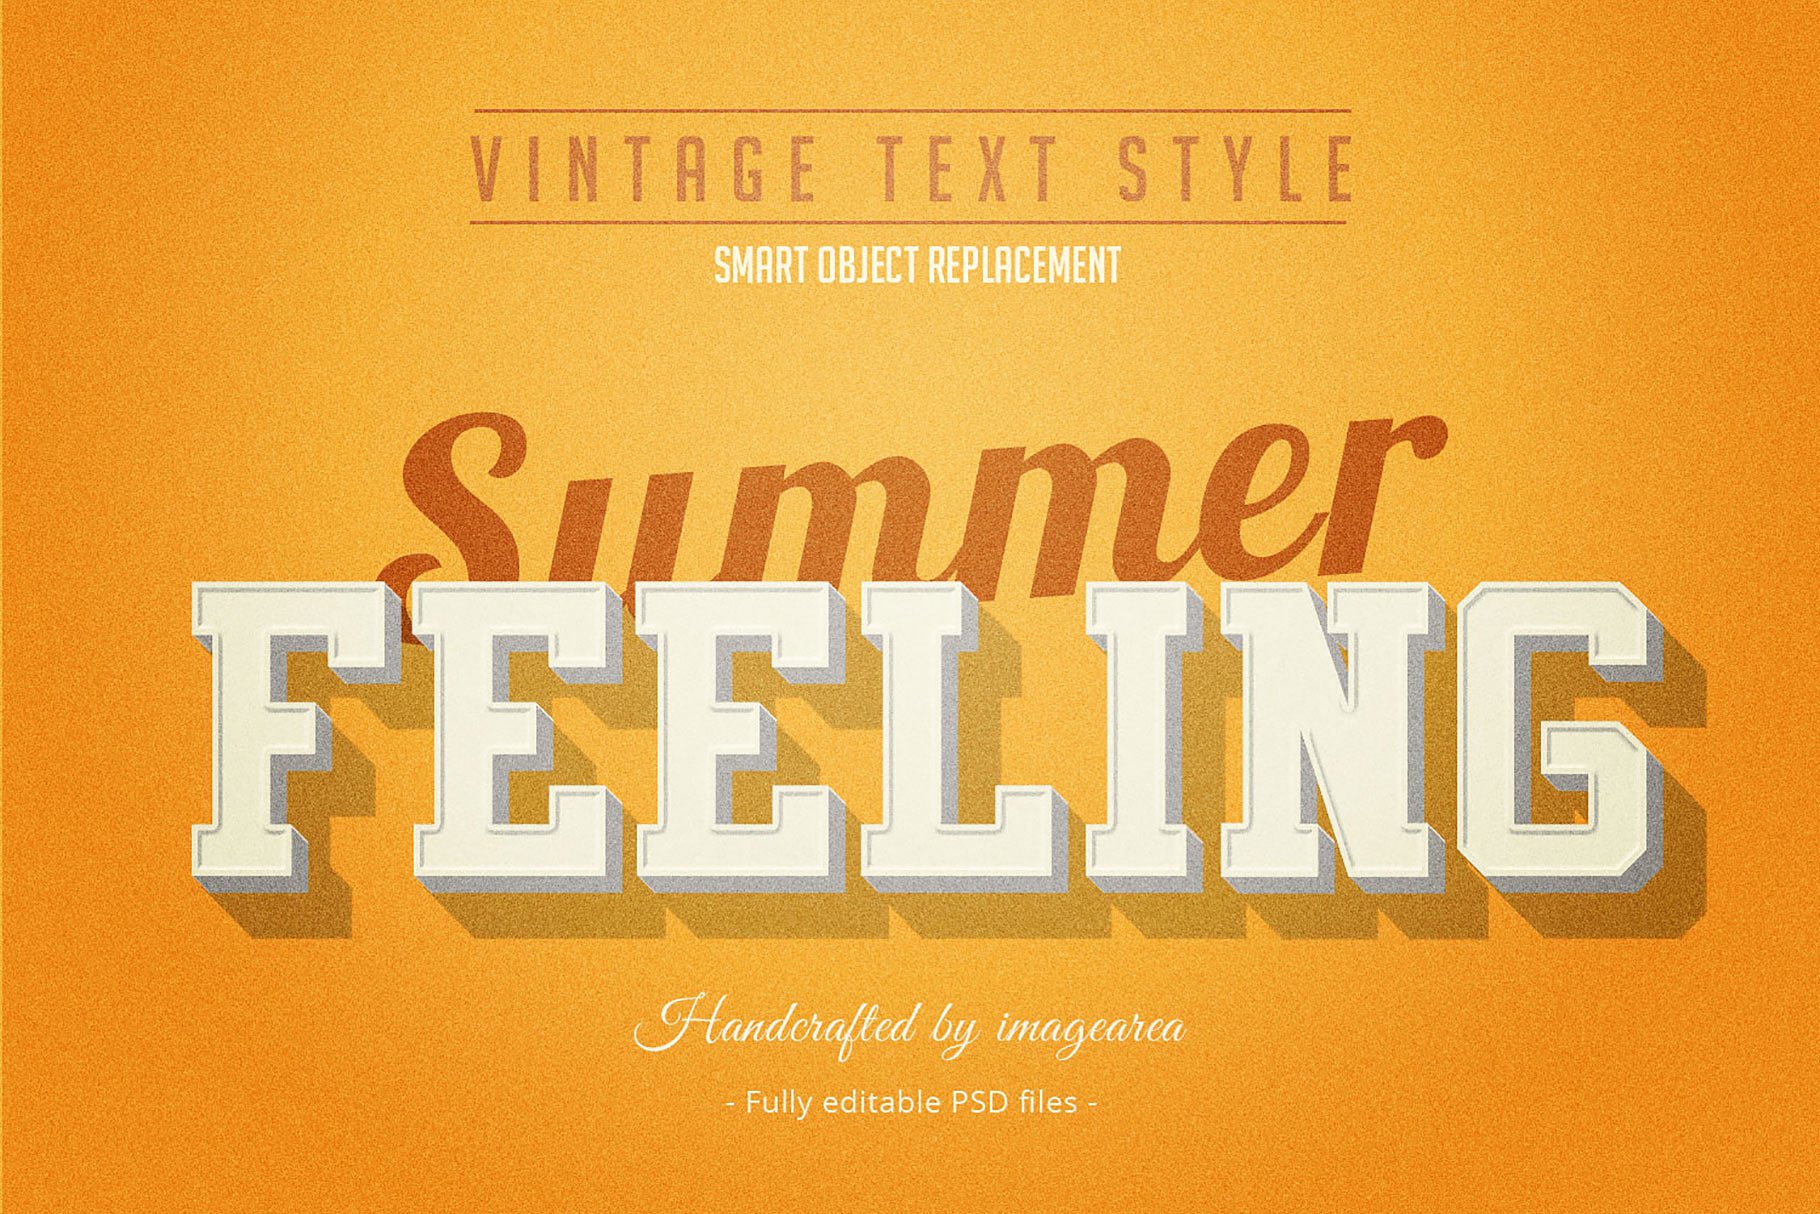 复古条纹风格文本图层样式 Vintage / Retro Text Styles插图(3)